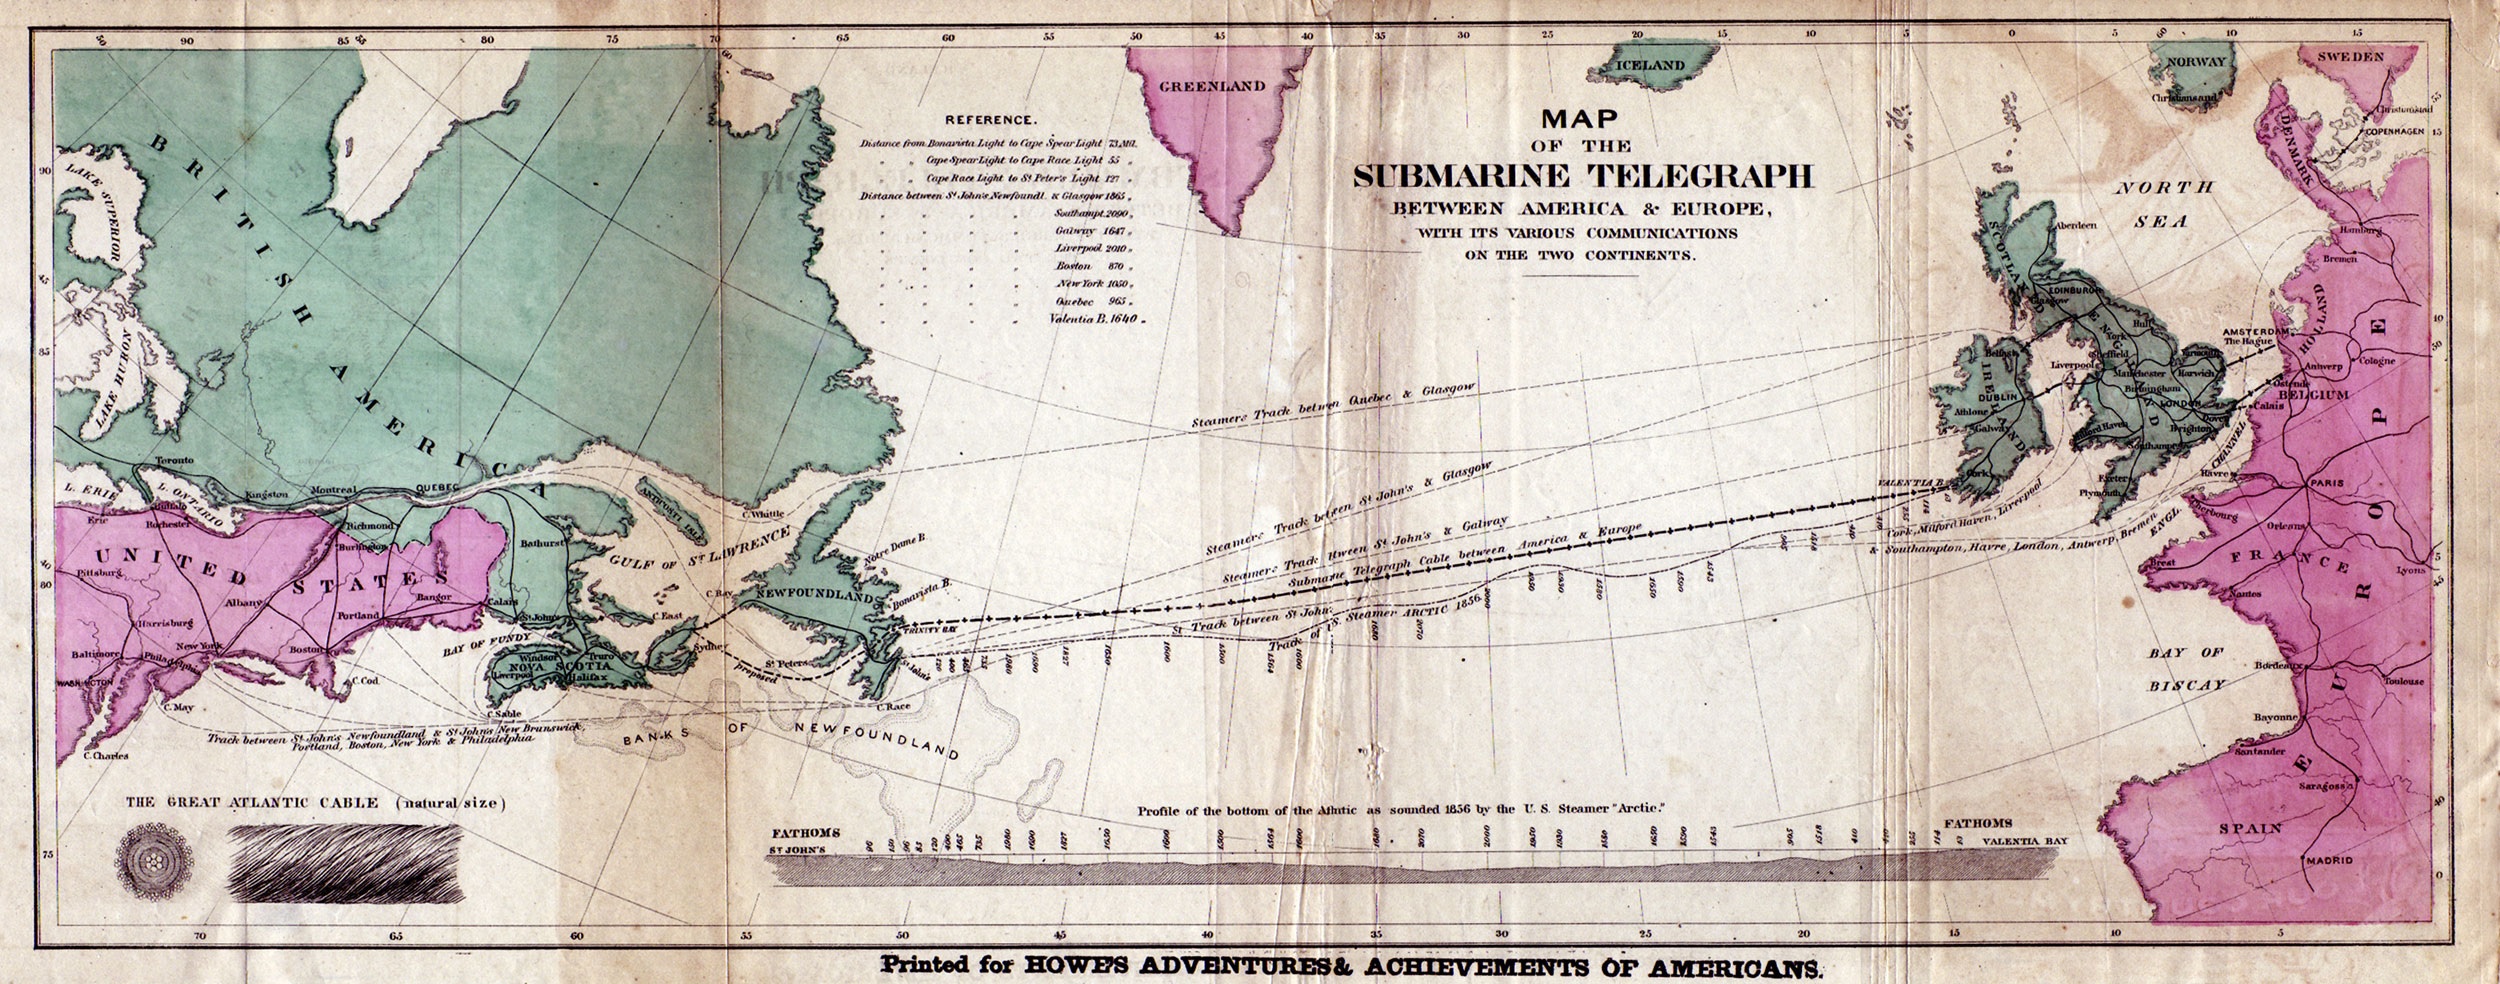 Cable telegráfico transatlántico - Wikipedia, la enciclopedia libre